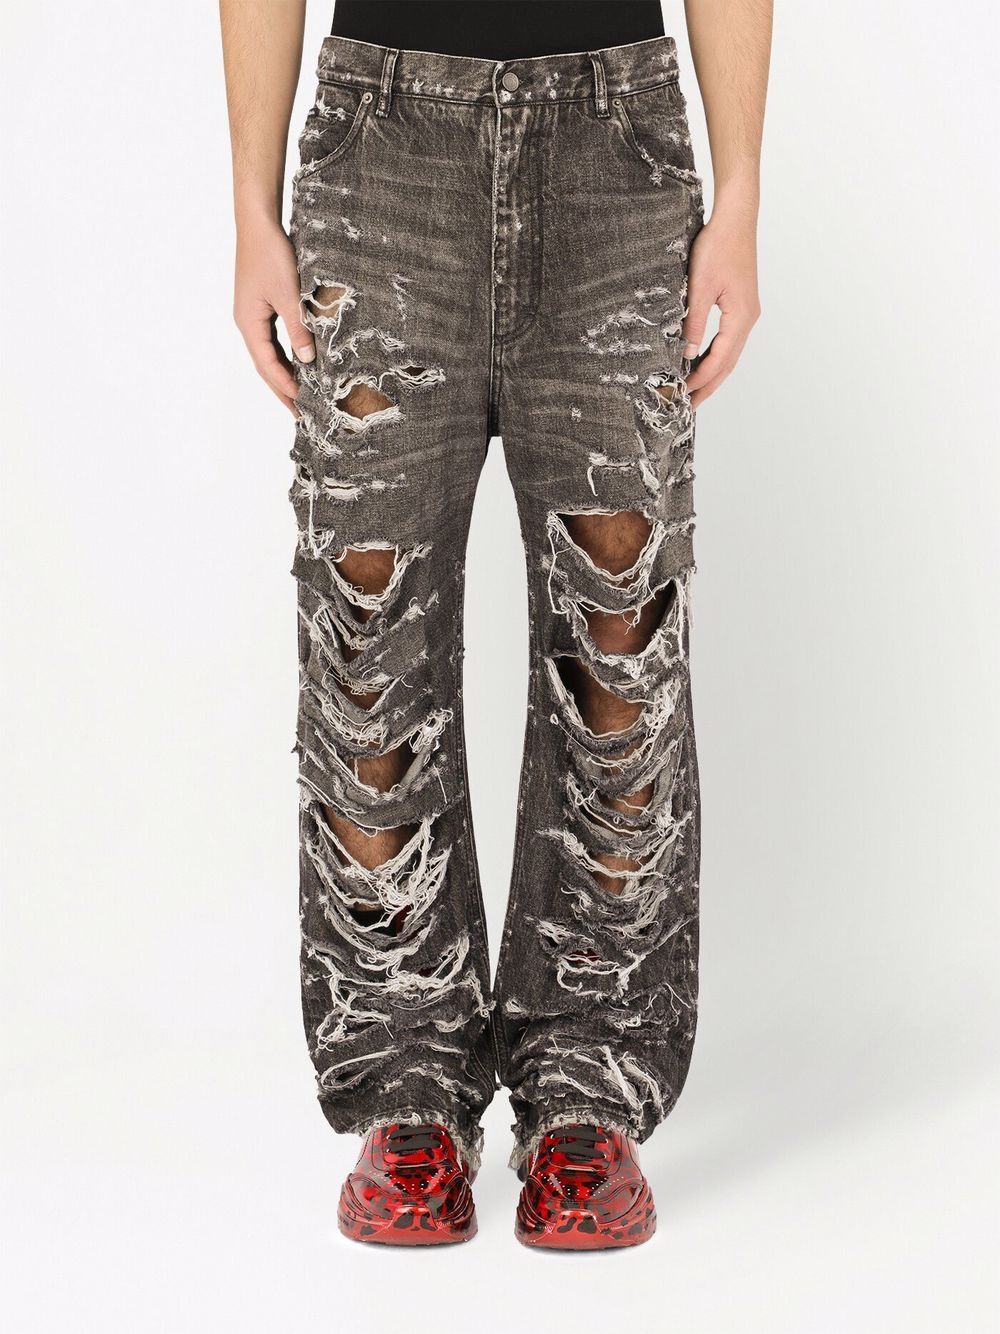 фото Dolce & gabbana широкие джинсы с прорезями